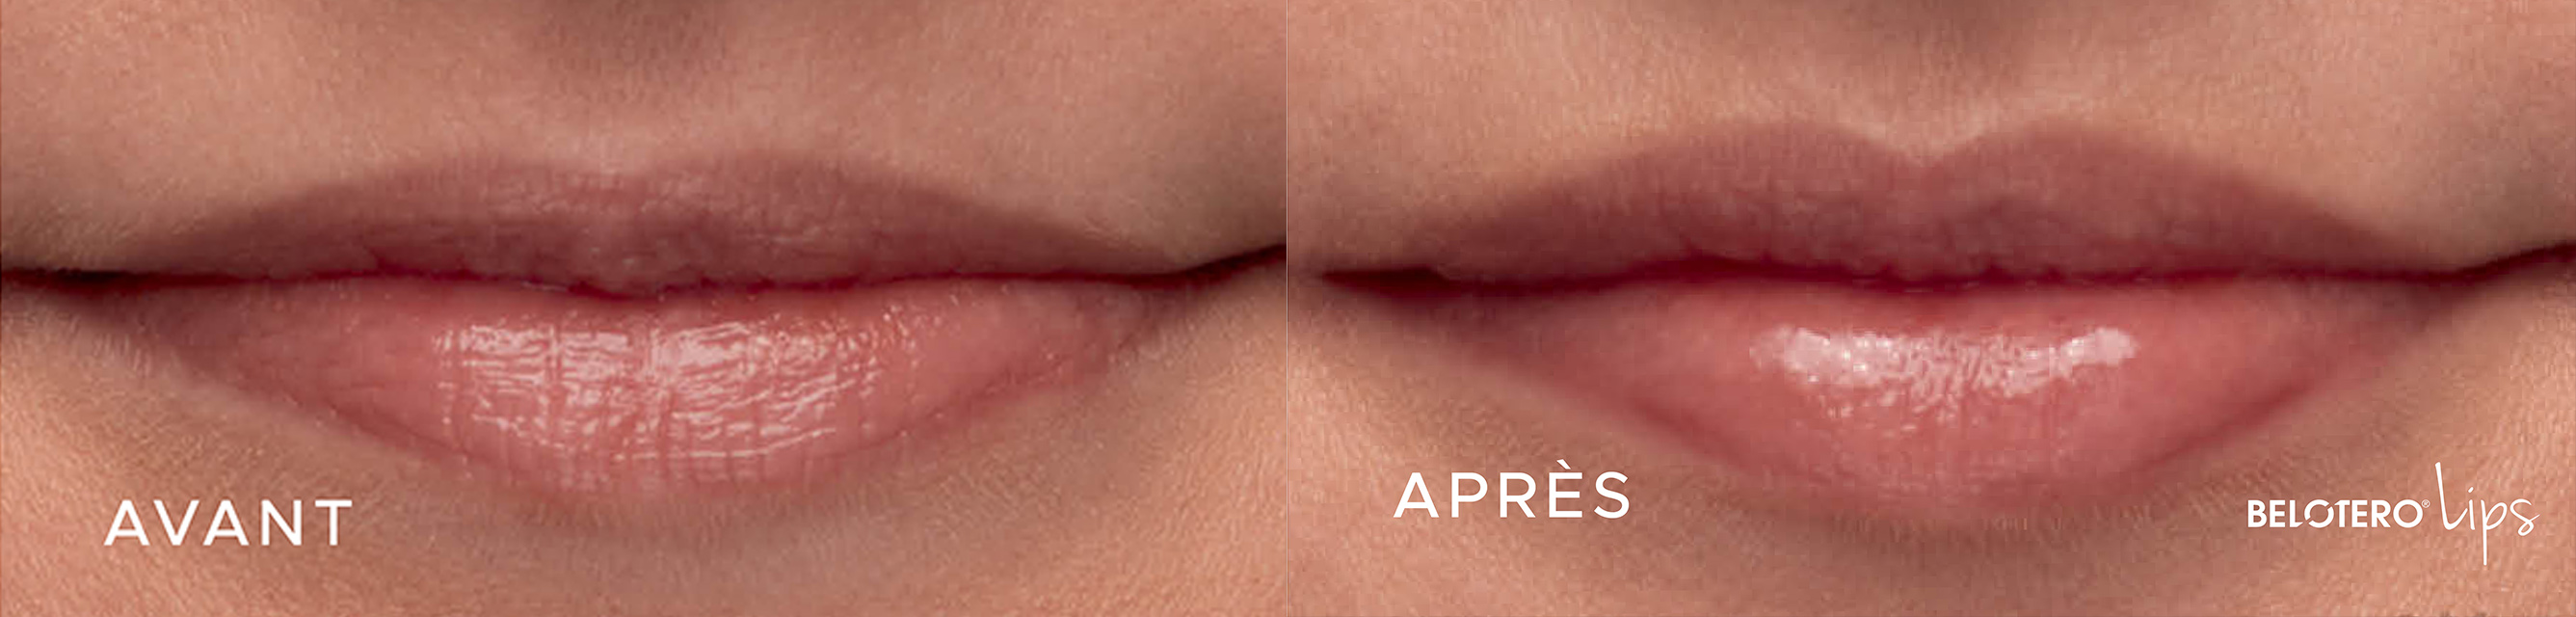 OM-Signature Avant - Après - Traitement des lèvres - Belotero Lips